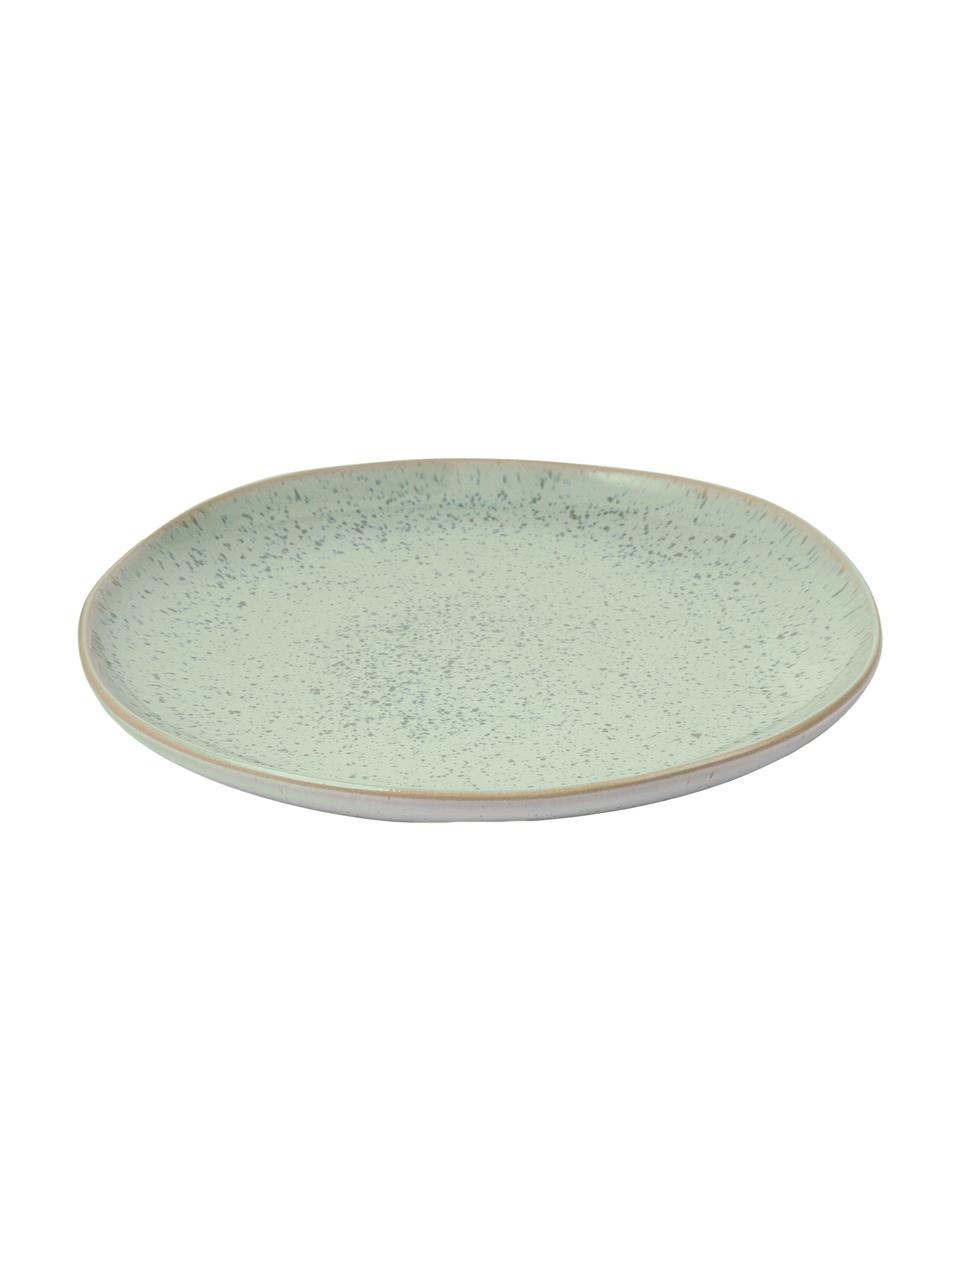 Ručně malovaný snídaňový talíř s reaktivní glazurou Areia, 2 ks, Mátová, tlumeně bílá, béžová